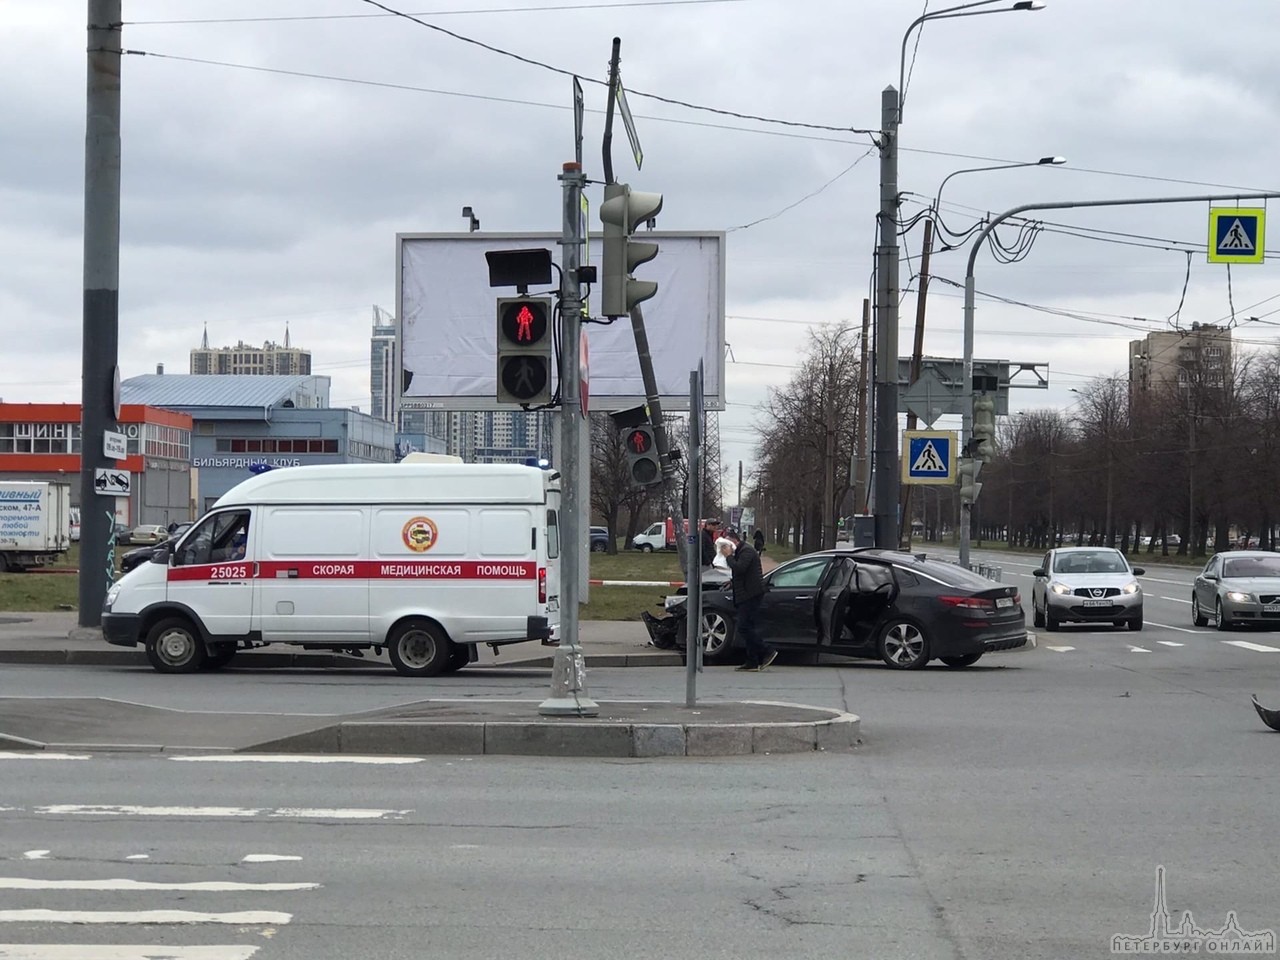 Ищу свидетелей ДТП, которое произошло 21 апреля на пересечении улицы Орджоникидзе и пр. Космонавтов,...